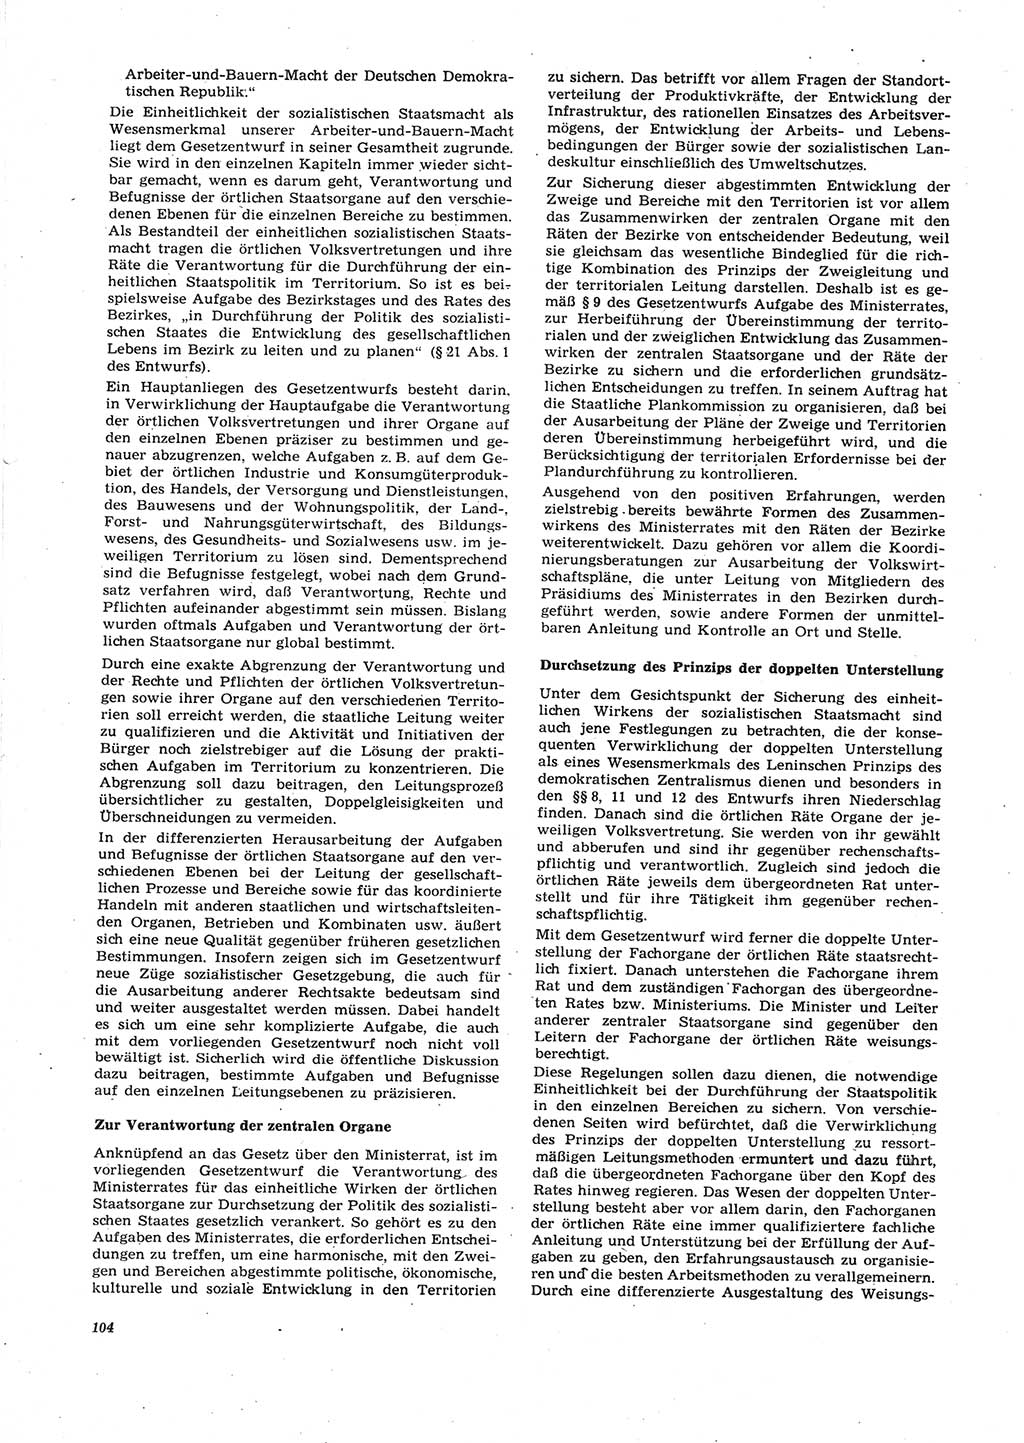 Neue Justiz (NJ), Zeitschrift für Recht und Rechtswissenschaft [Deutsche Demokratische Republik (DDR)], 27. Jahrgang 1973, Seite 104 (NJ DDR 1973, S. 104)